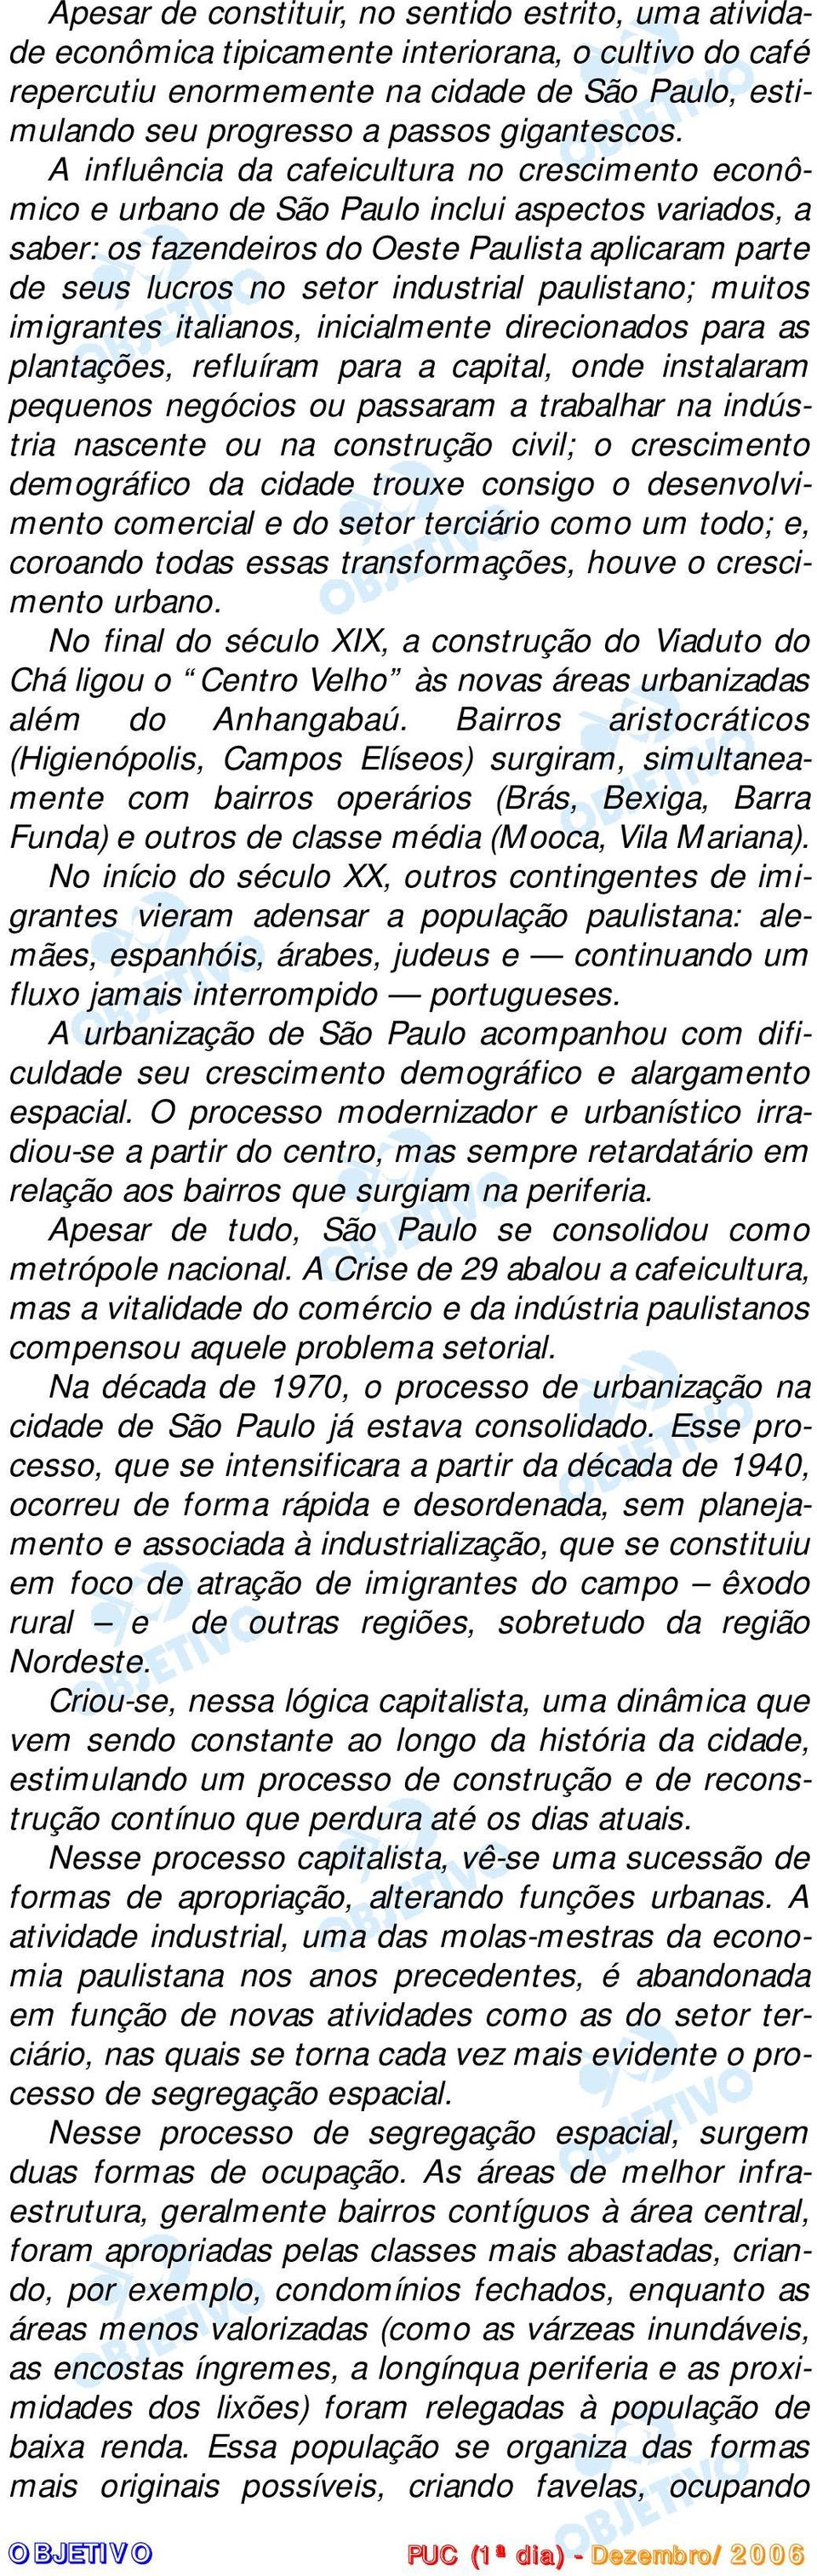 A influência da cafeicultura no crescimento econômico e urbano de São Paulo inclui aspectos variados, a saber: os fazendeiros do Oeste Paulista aplicaram parte de seus lucros no setor industrial